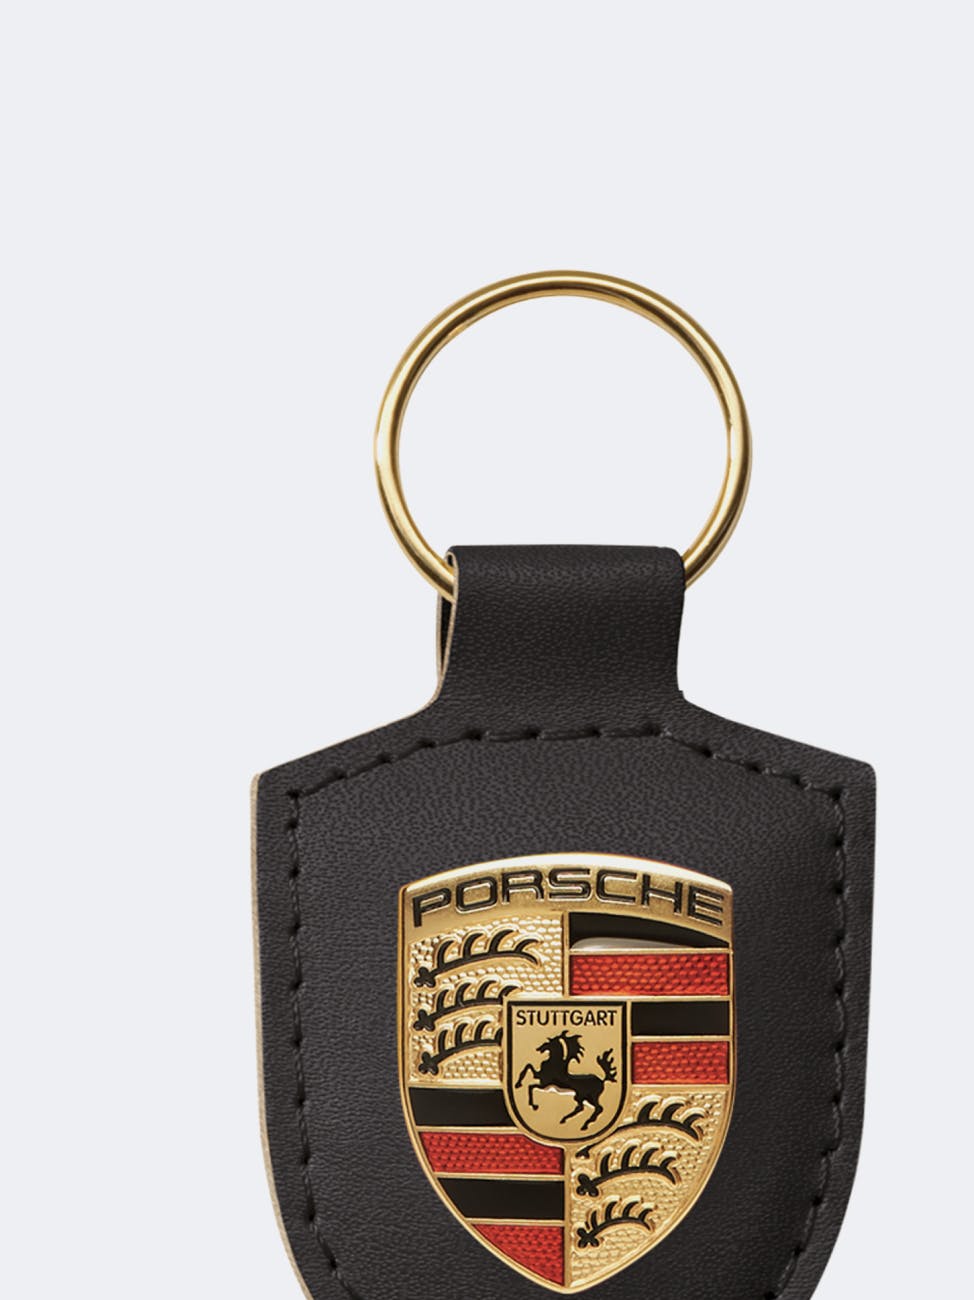 Porsche Range of genuine accessories - Porsche USA